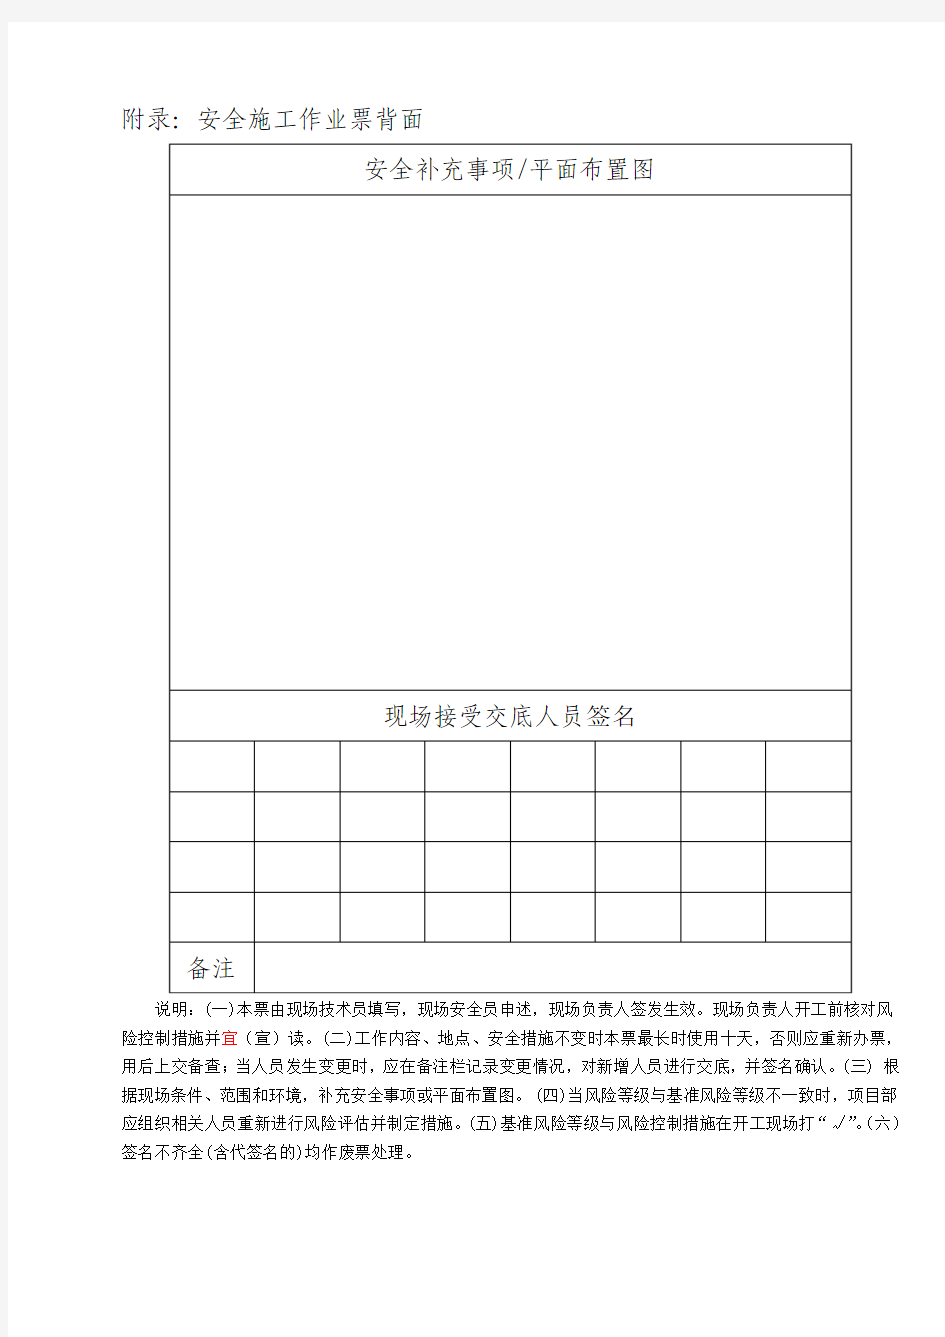 中国南方电网有限责任公司电网建设安全施工作业票(配网部分)